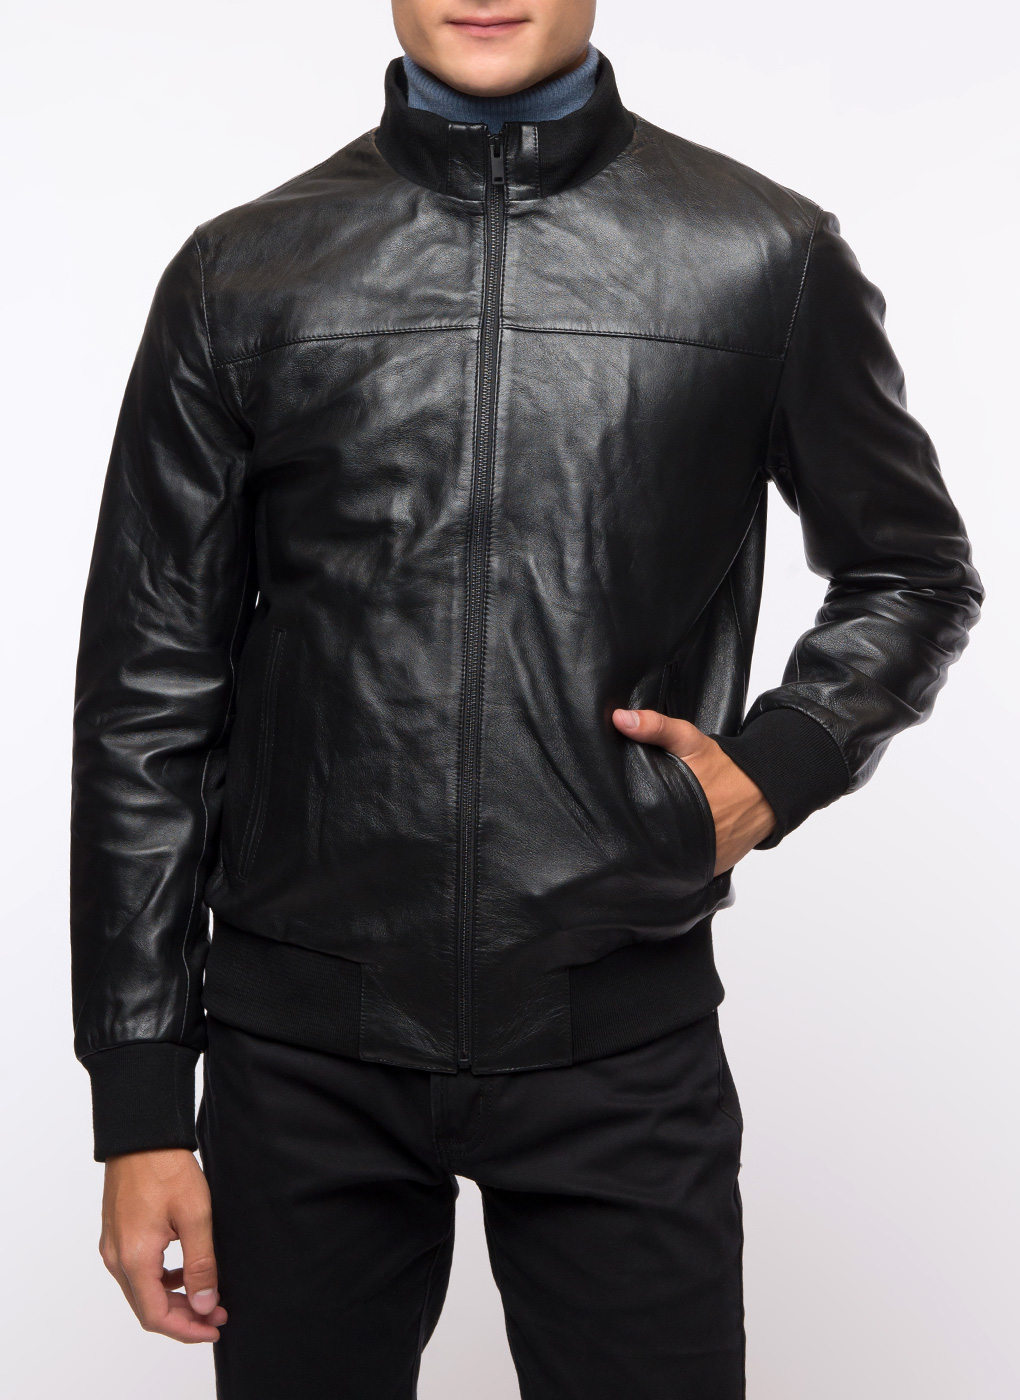 Кожаная куртка мужская Каляев 1624717 черная 54 RU